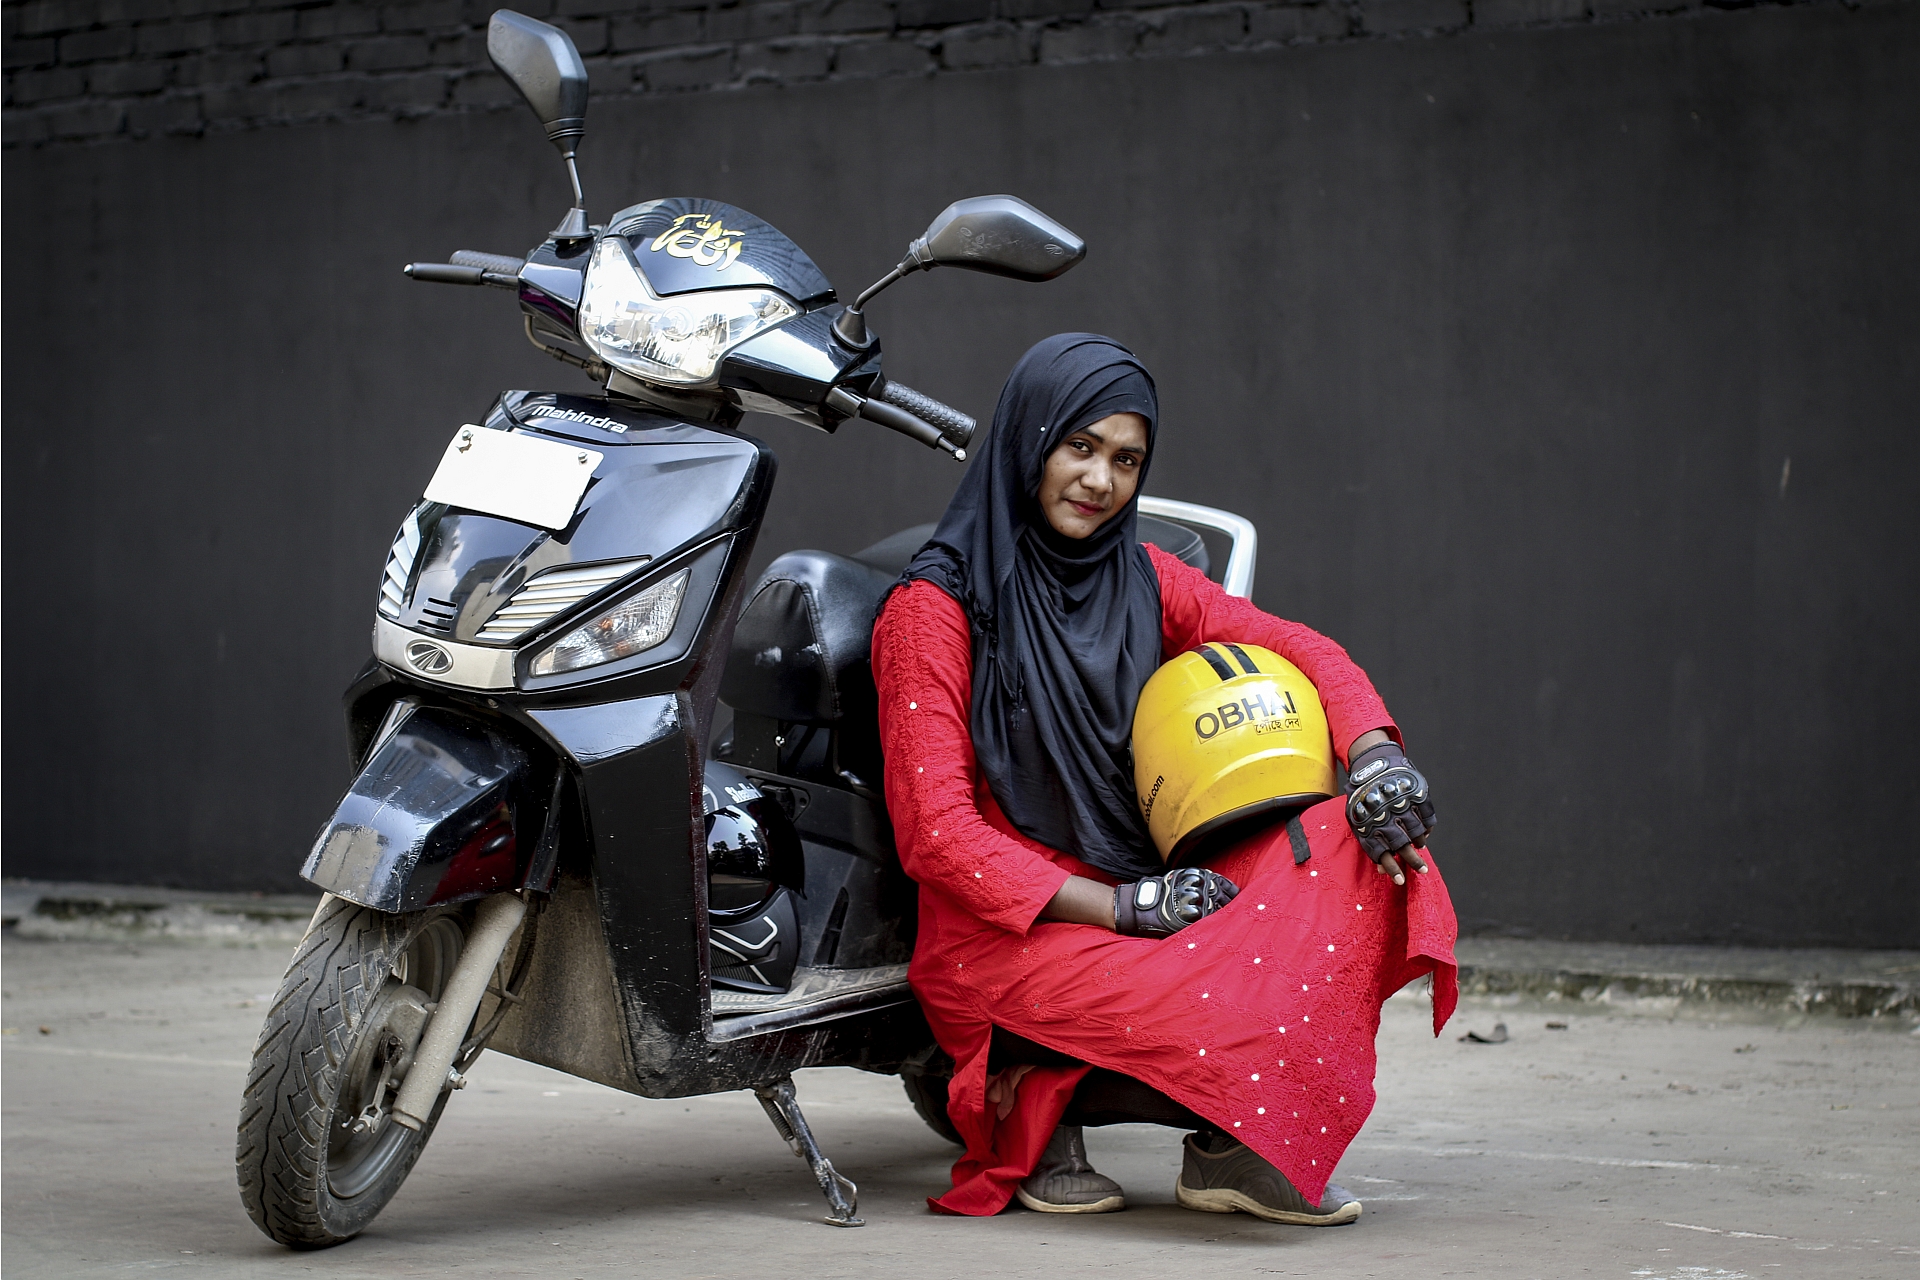 Spiksplinternieuw Bangladesh: Vrouwen op de motor in een mannenmaatschappij - MO* DN-69